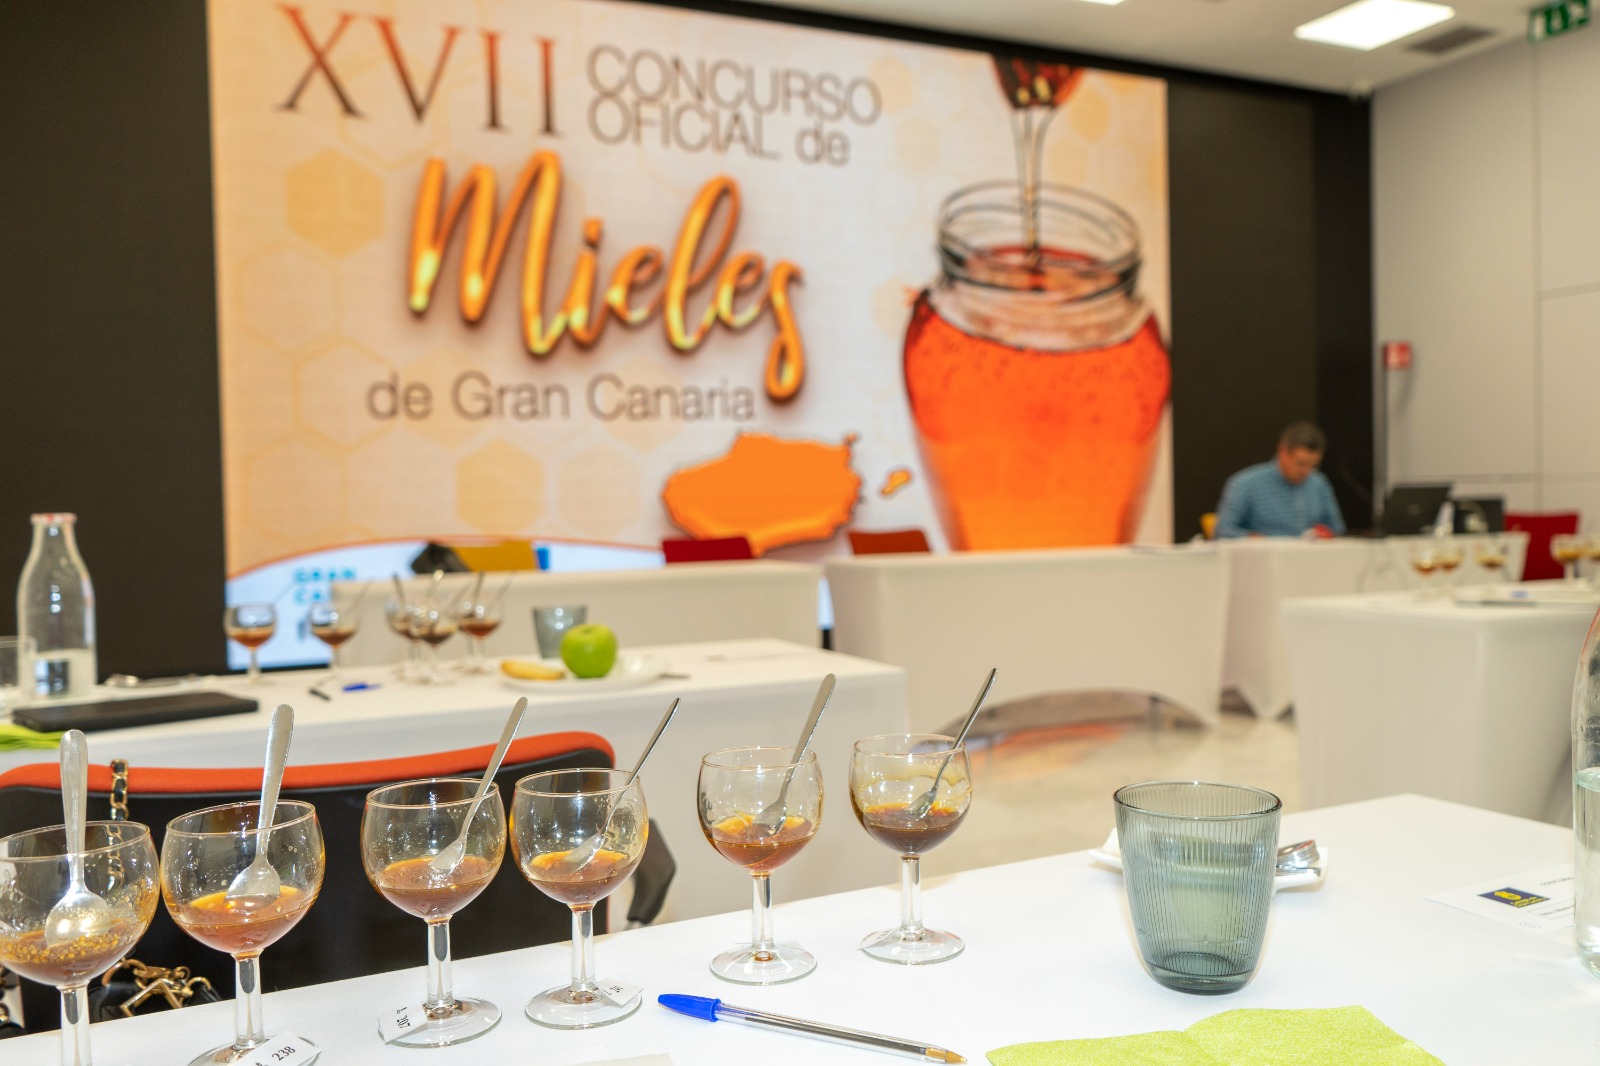 XVII Concurso oficial de Mieles de Gran Canaria / CanariasNoticias.es